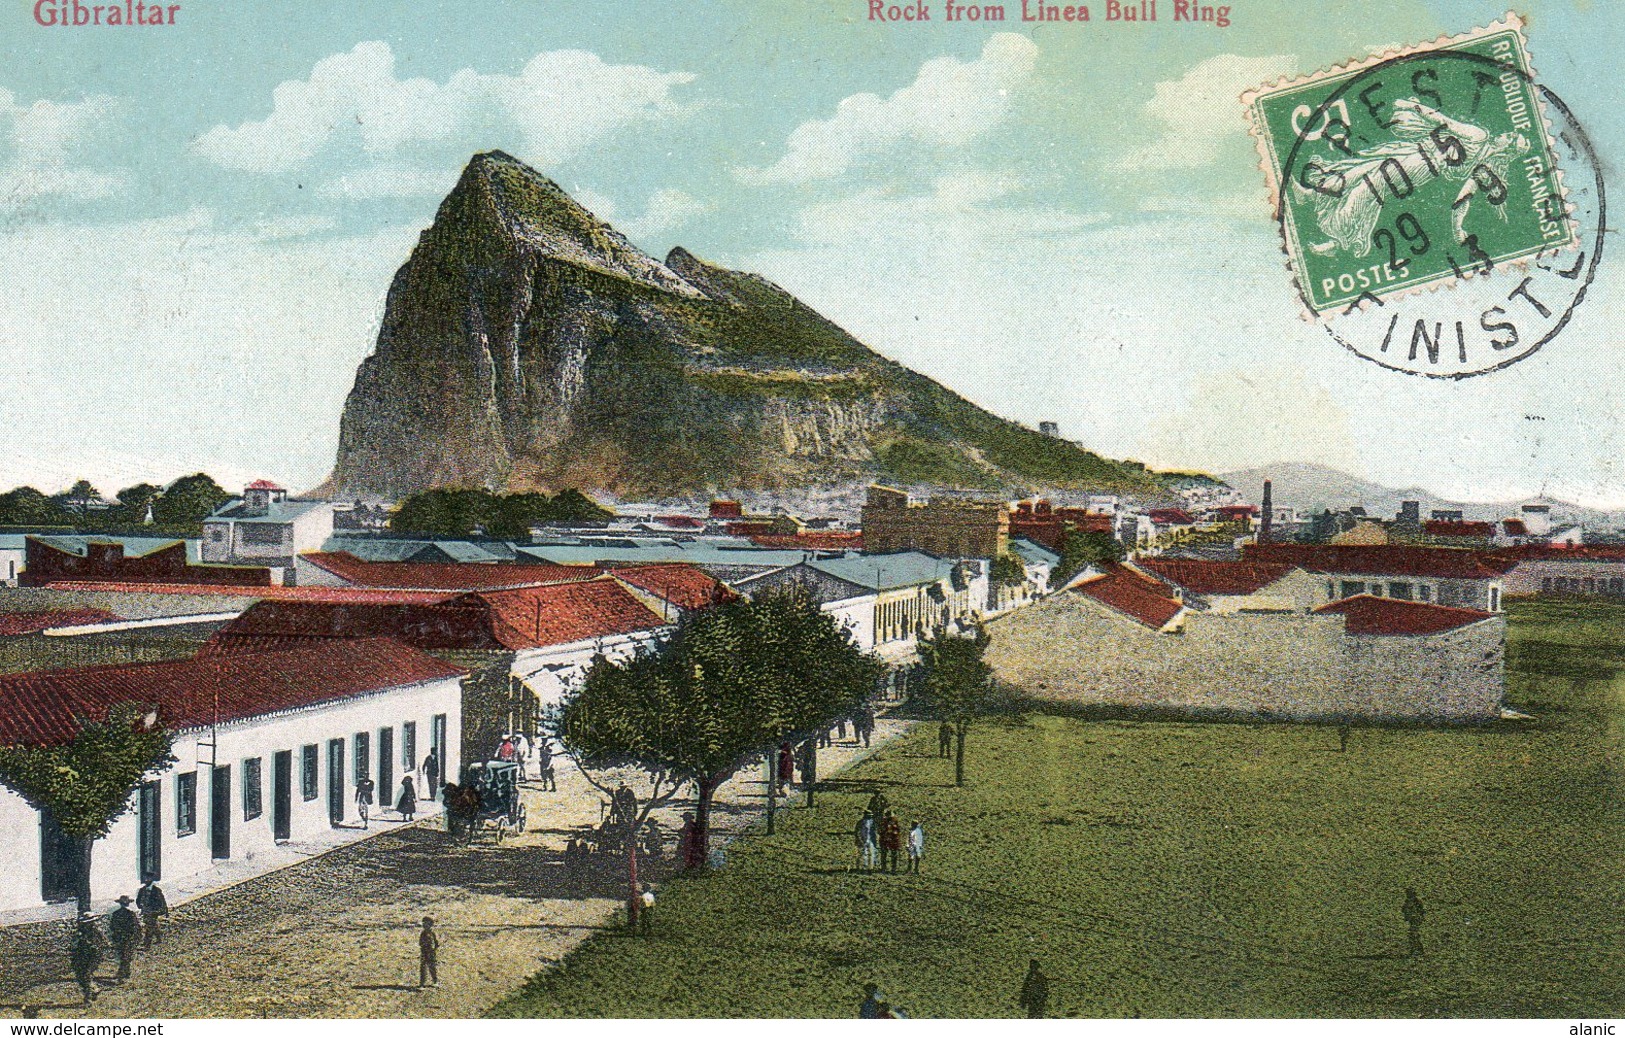 Gibraltar--ROCH FROM LINEA BULL RING - Gibraltar